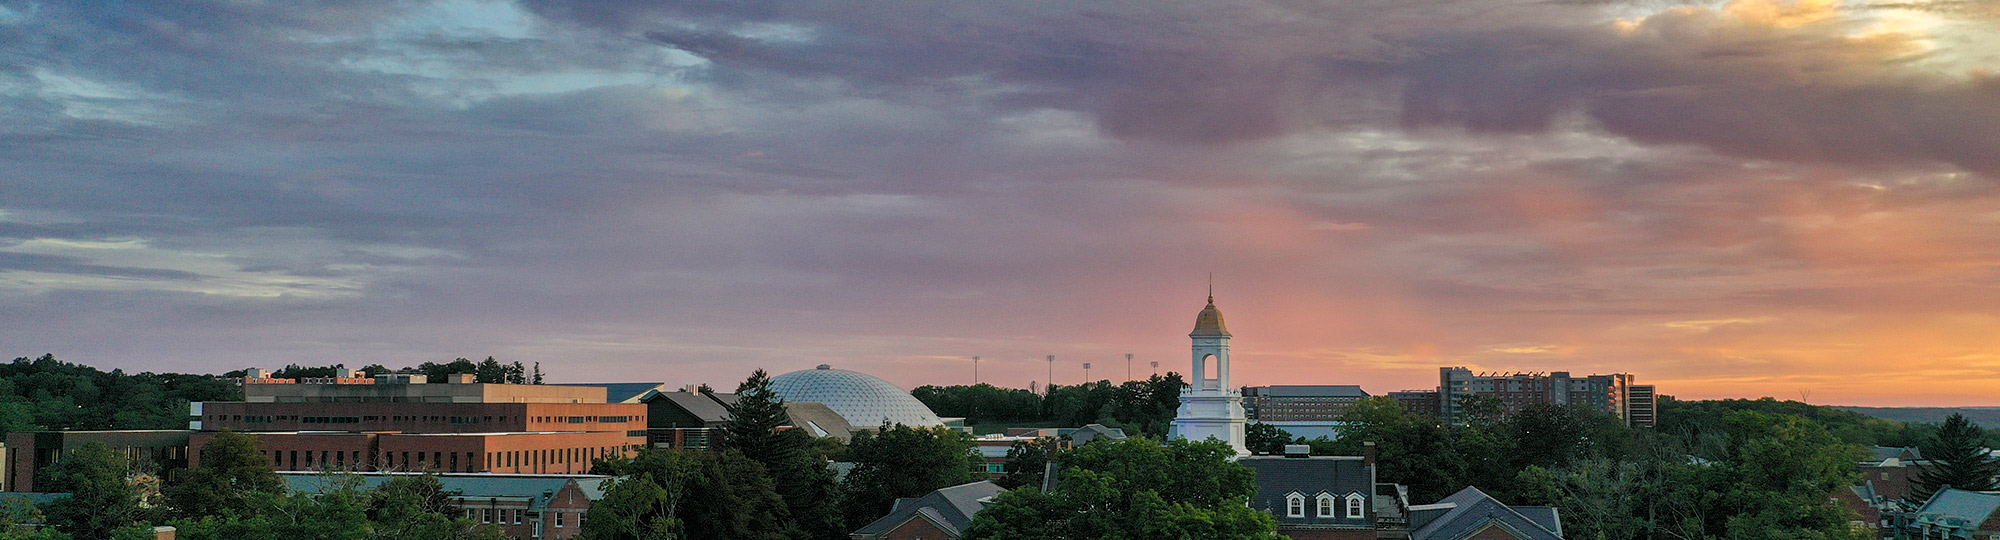 sunrise over campus